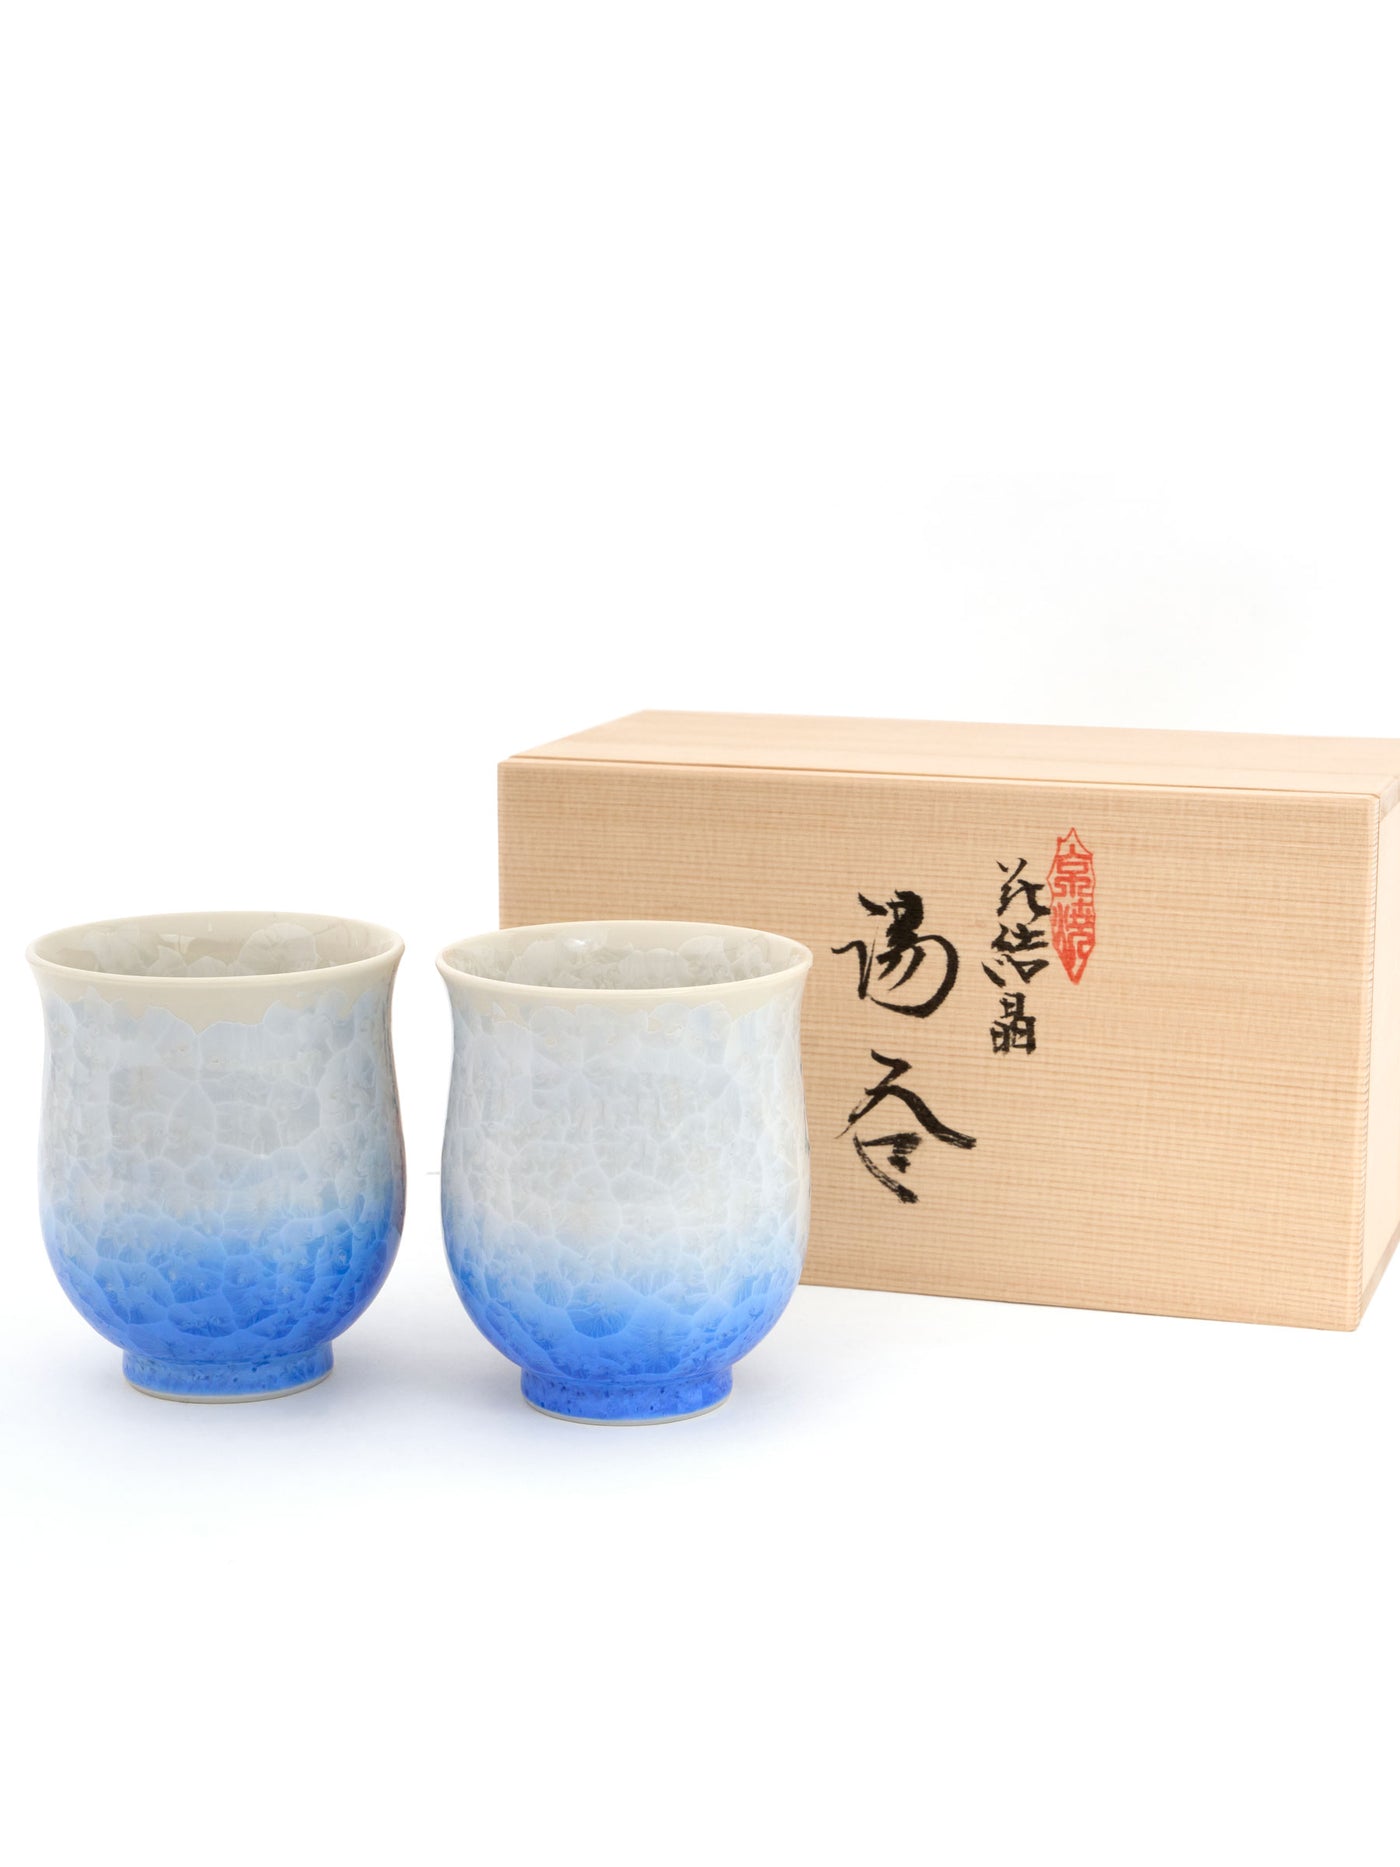 Ensemble de tasses à thé Cristal Bleu Yunomi Kyoto de Kitaya (7fl.oz/200ml)